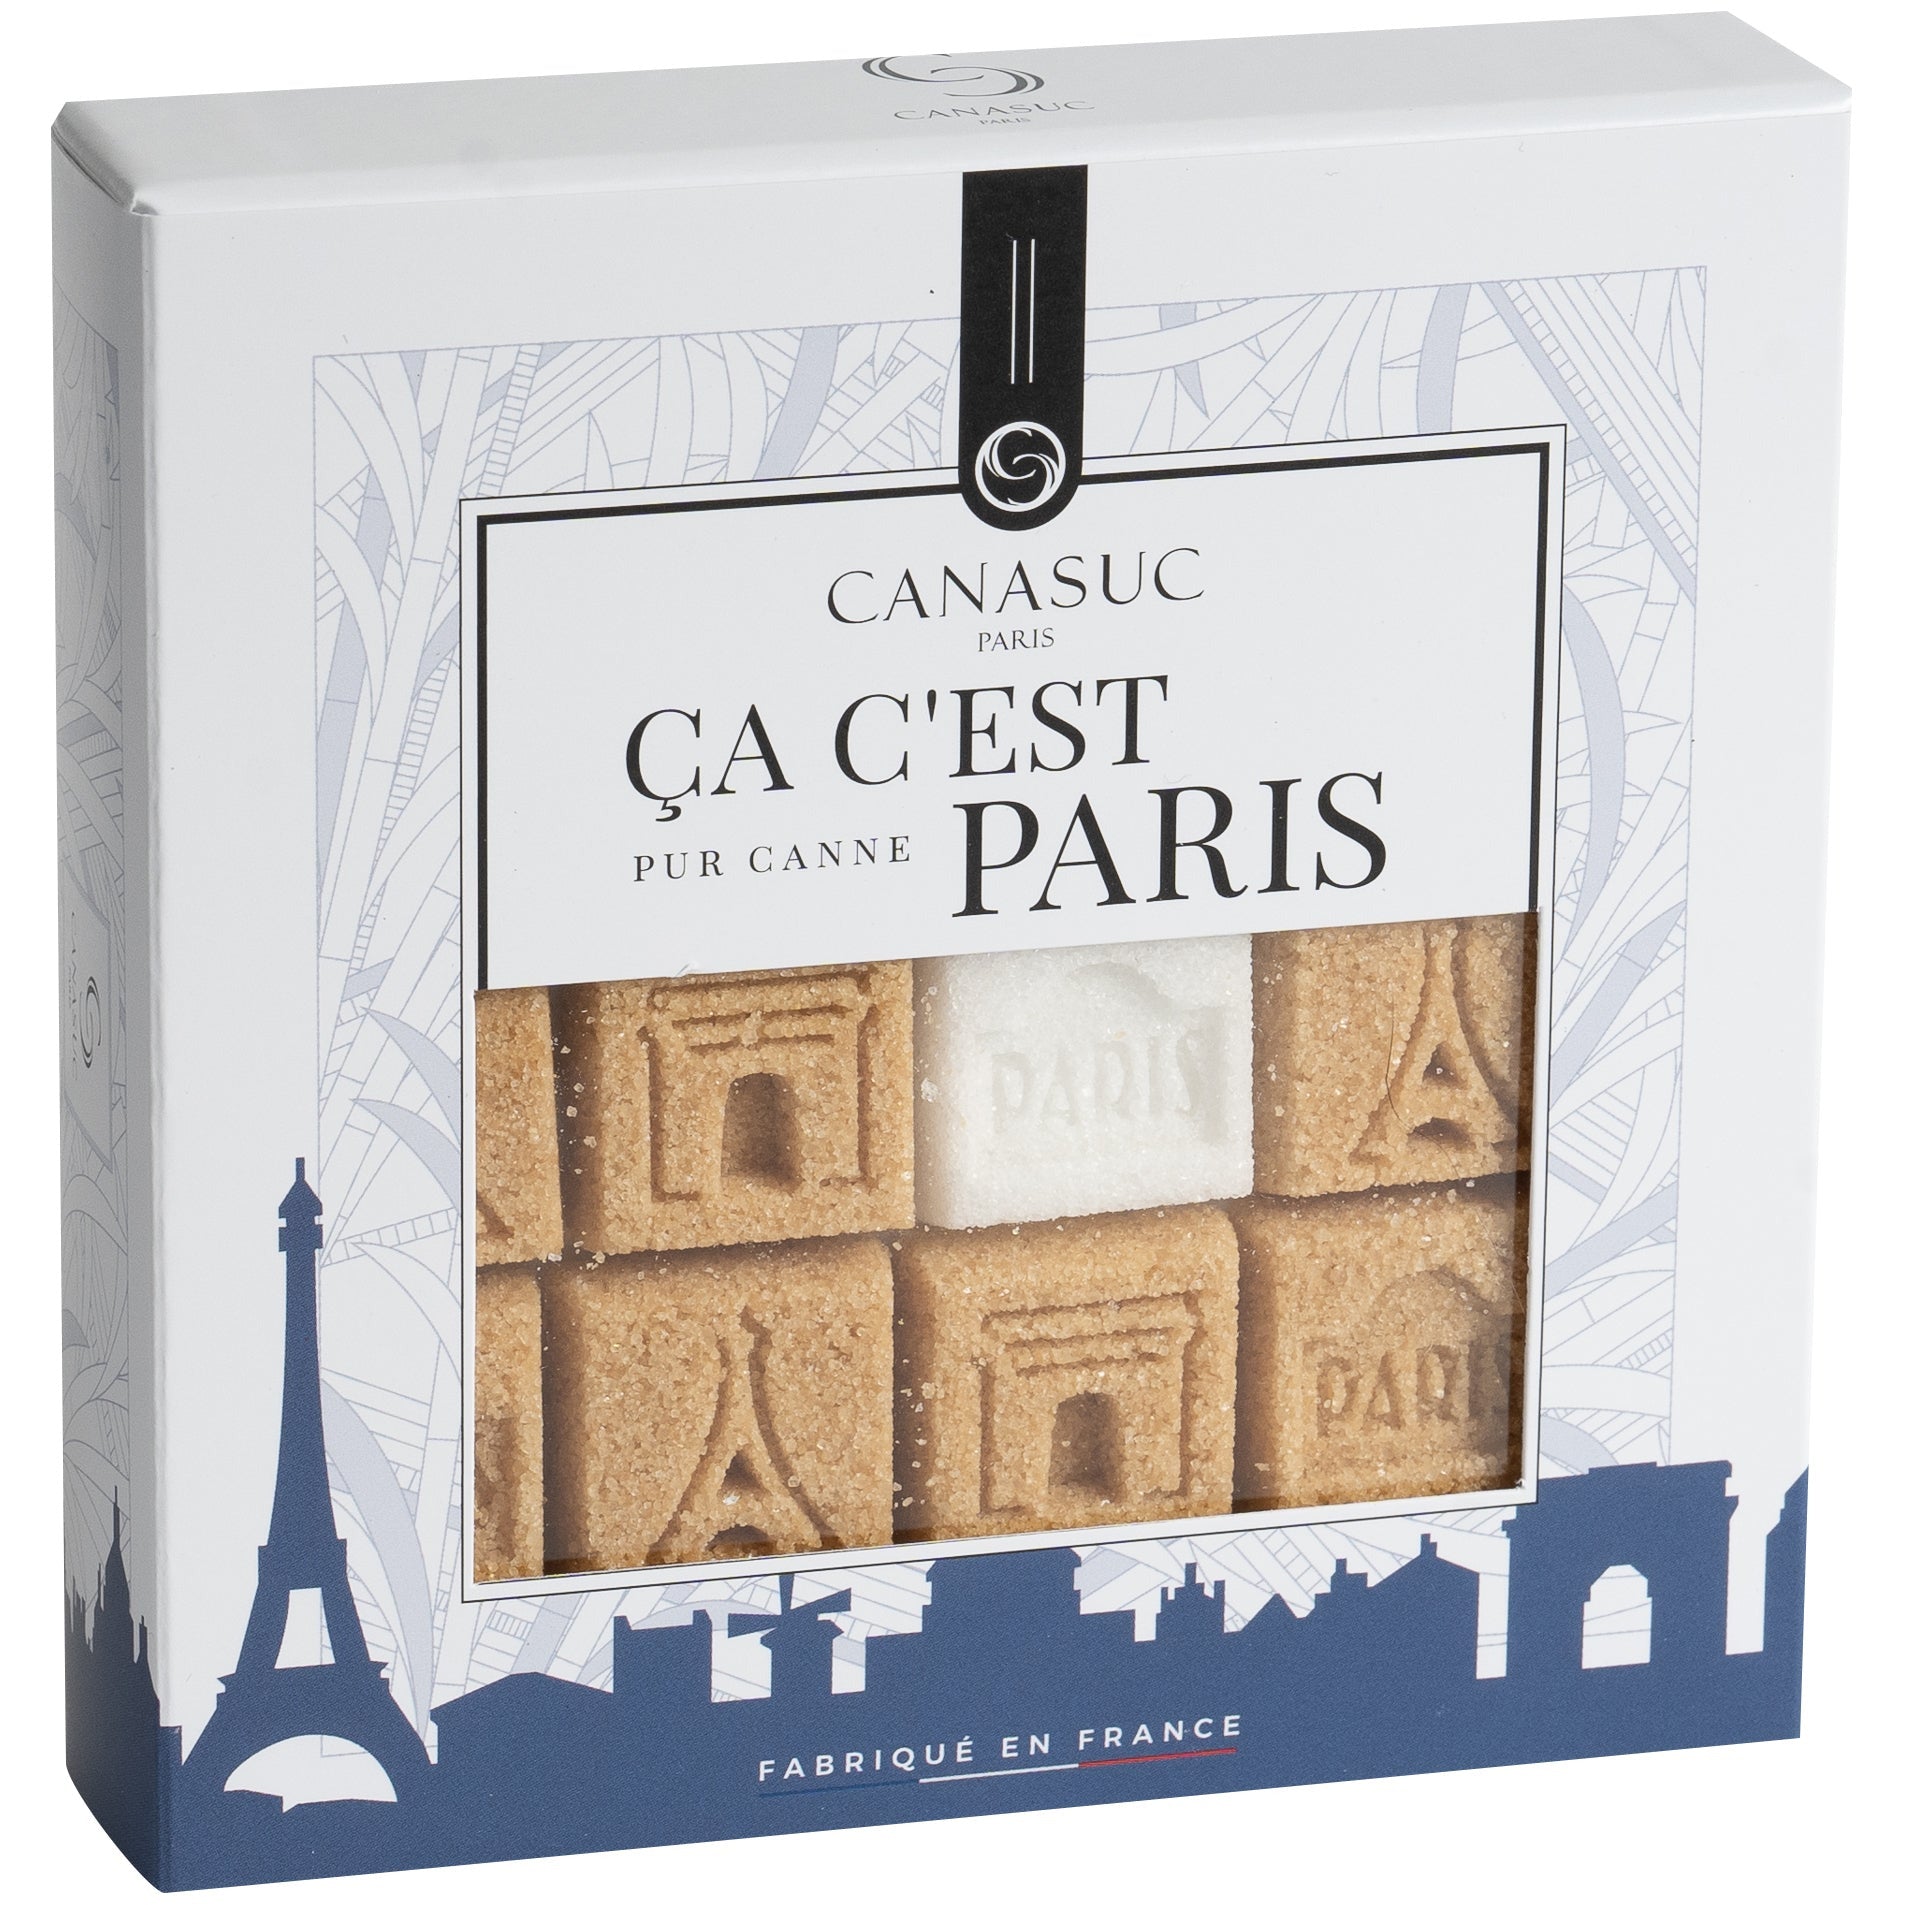 Sugar Cubes, That's Paris (Ça c'est Paris) Landmarks